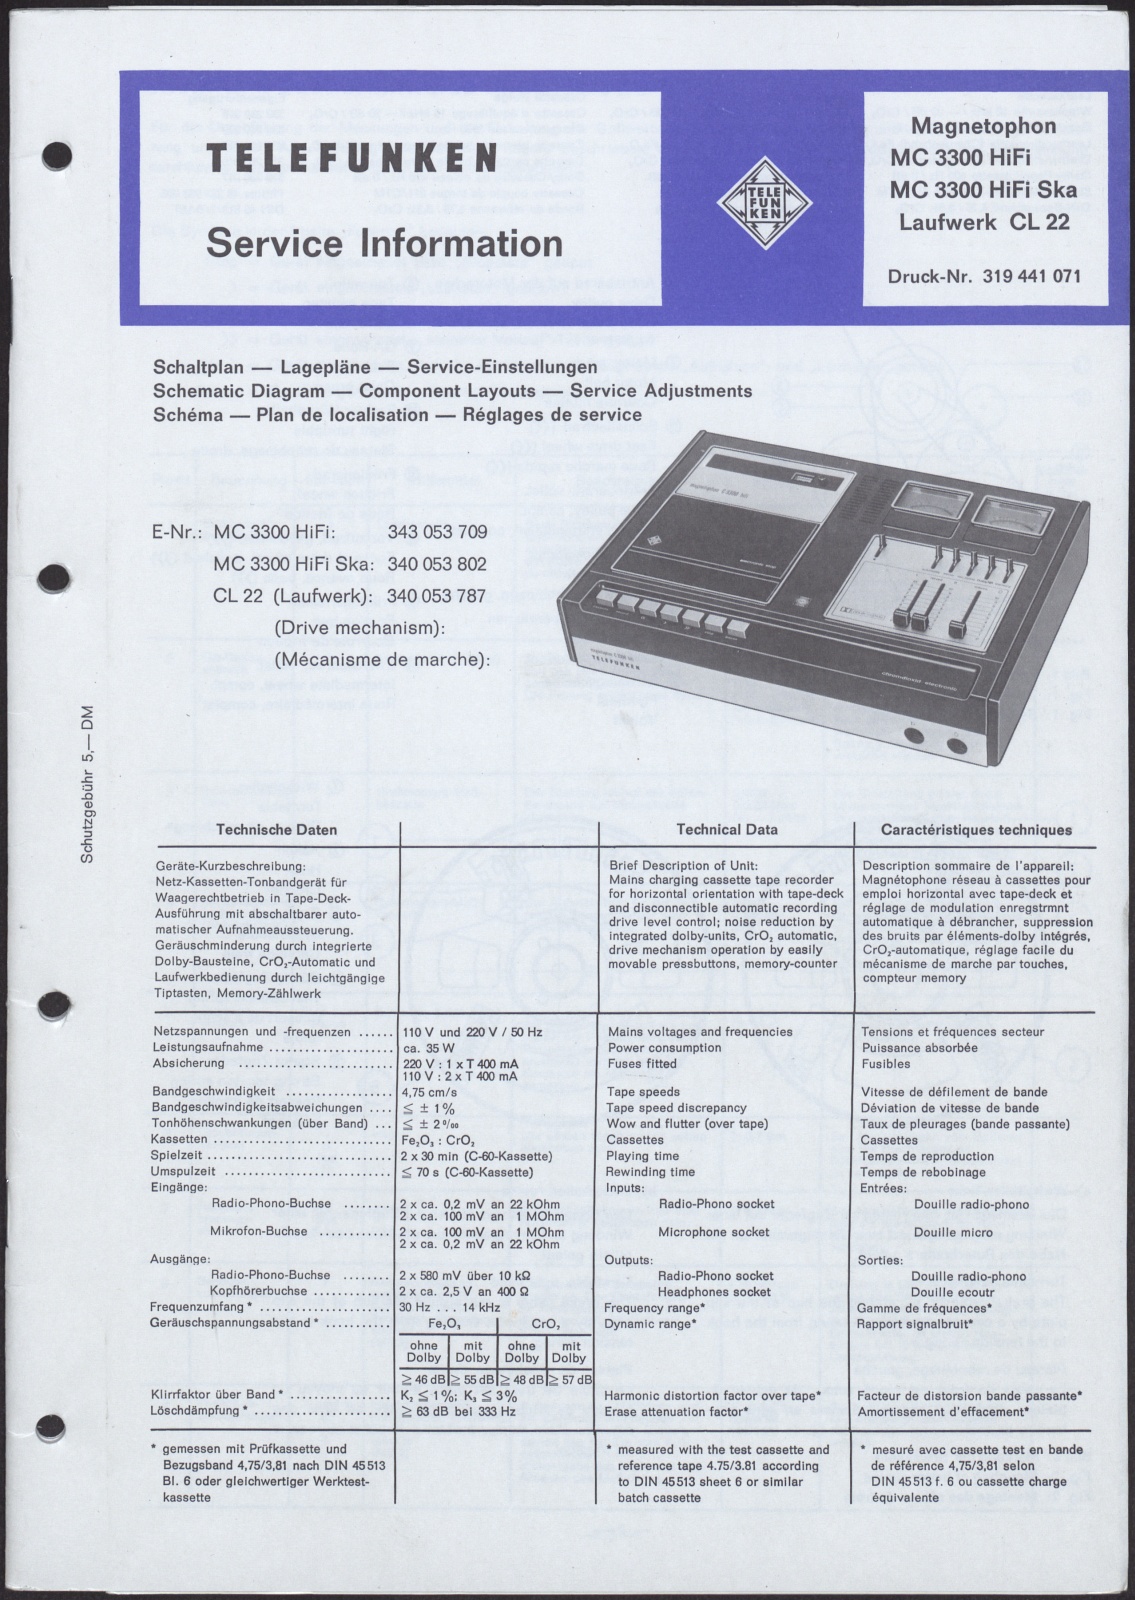 Bedienungsanleitung: Telefunken Service Information für Magnetophon MC 3300 HiFi, MC 3300 HiFi Ska und Laufwerk CL 22 (Stiftung Deutsches Technikmuseum Berlin CC0)